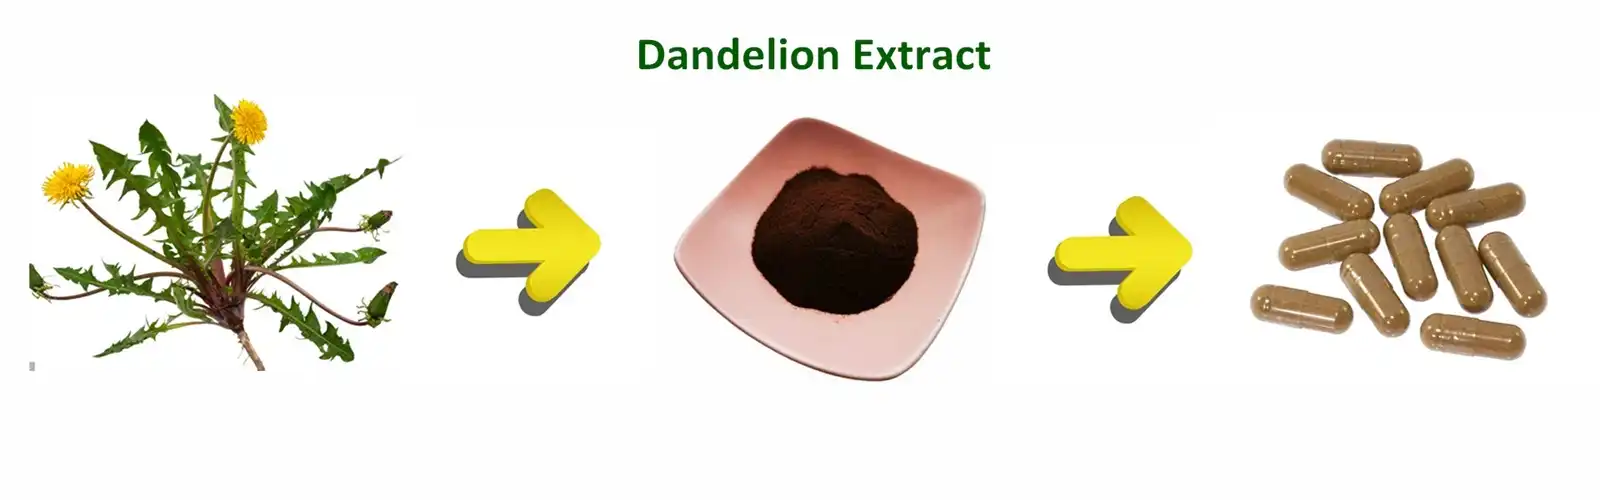 Dandelion Extract powder